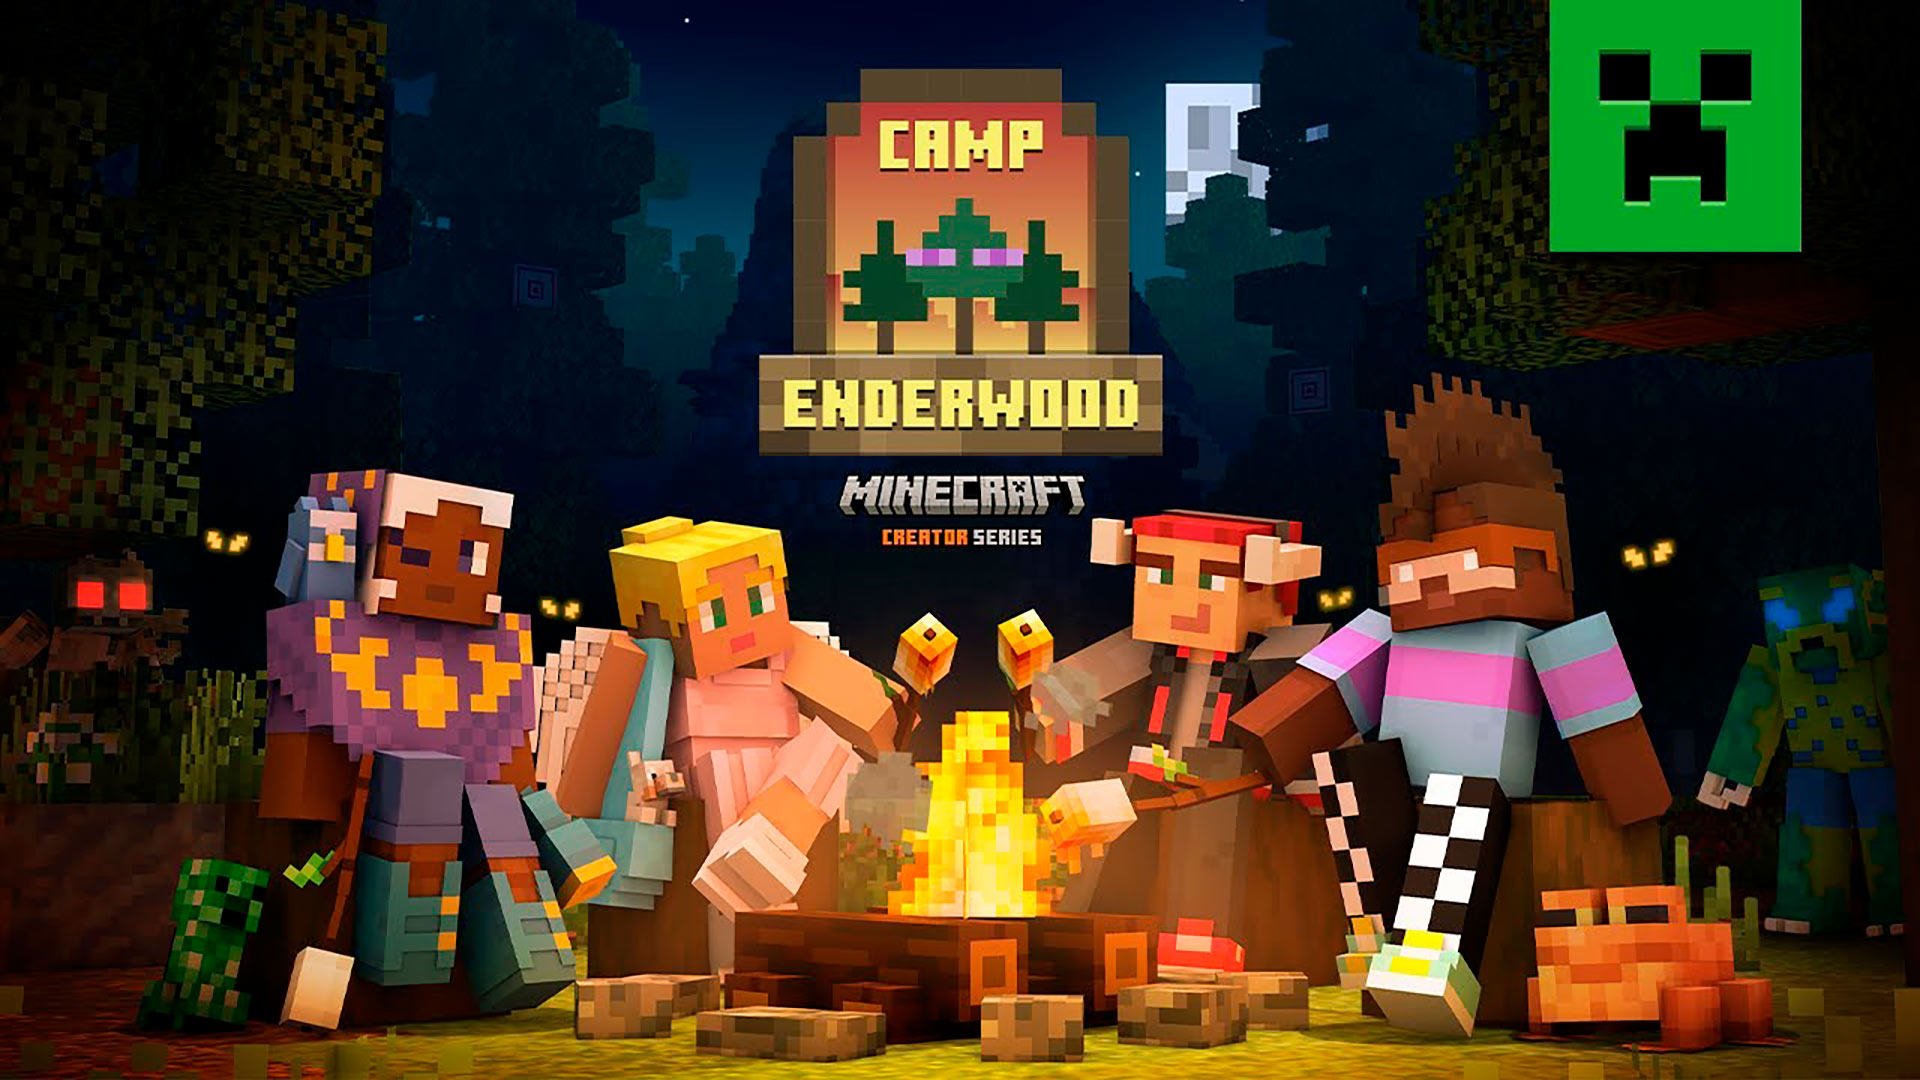 Campamento Enderwood en Minecraft Bedrock Edition